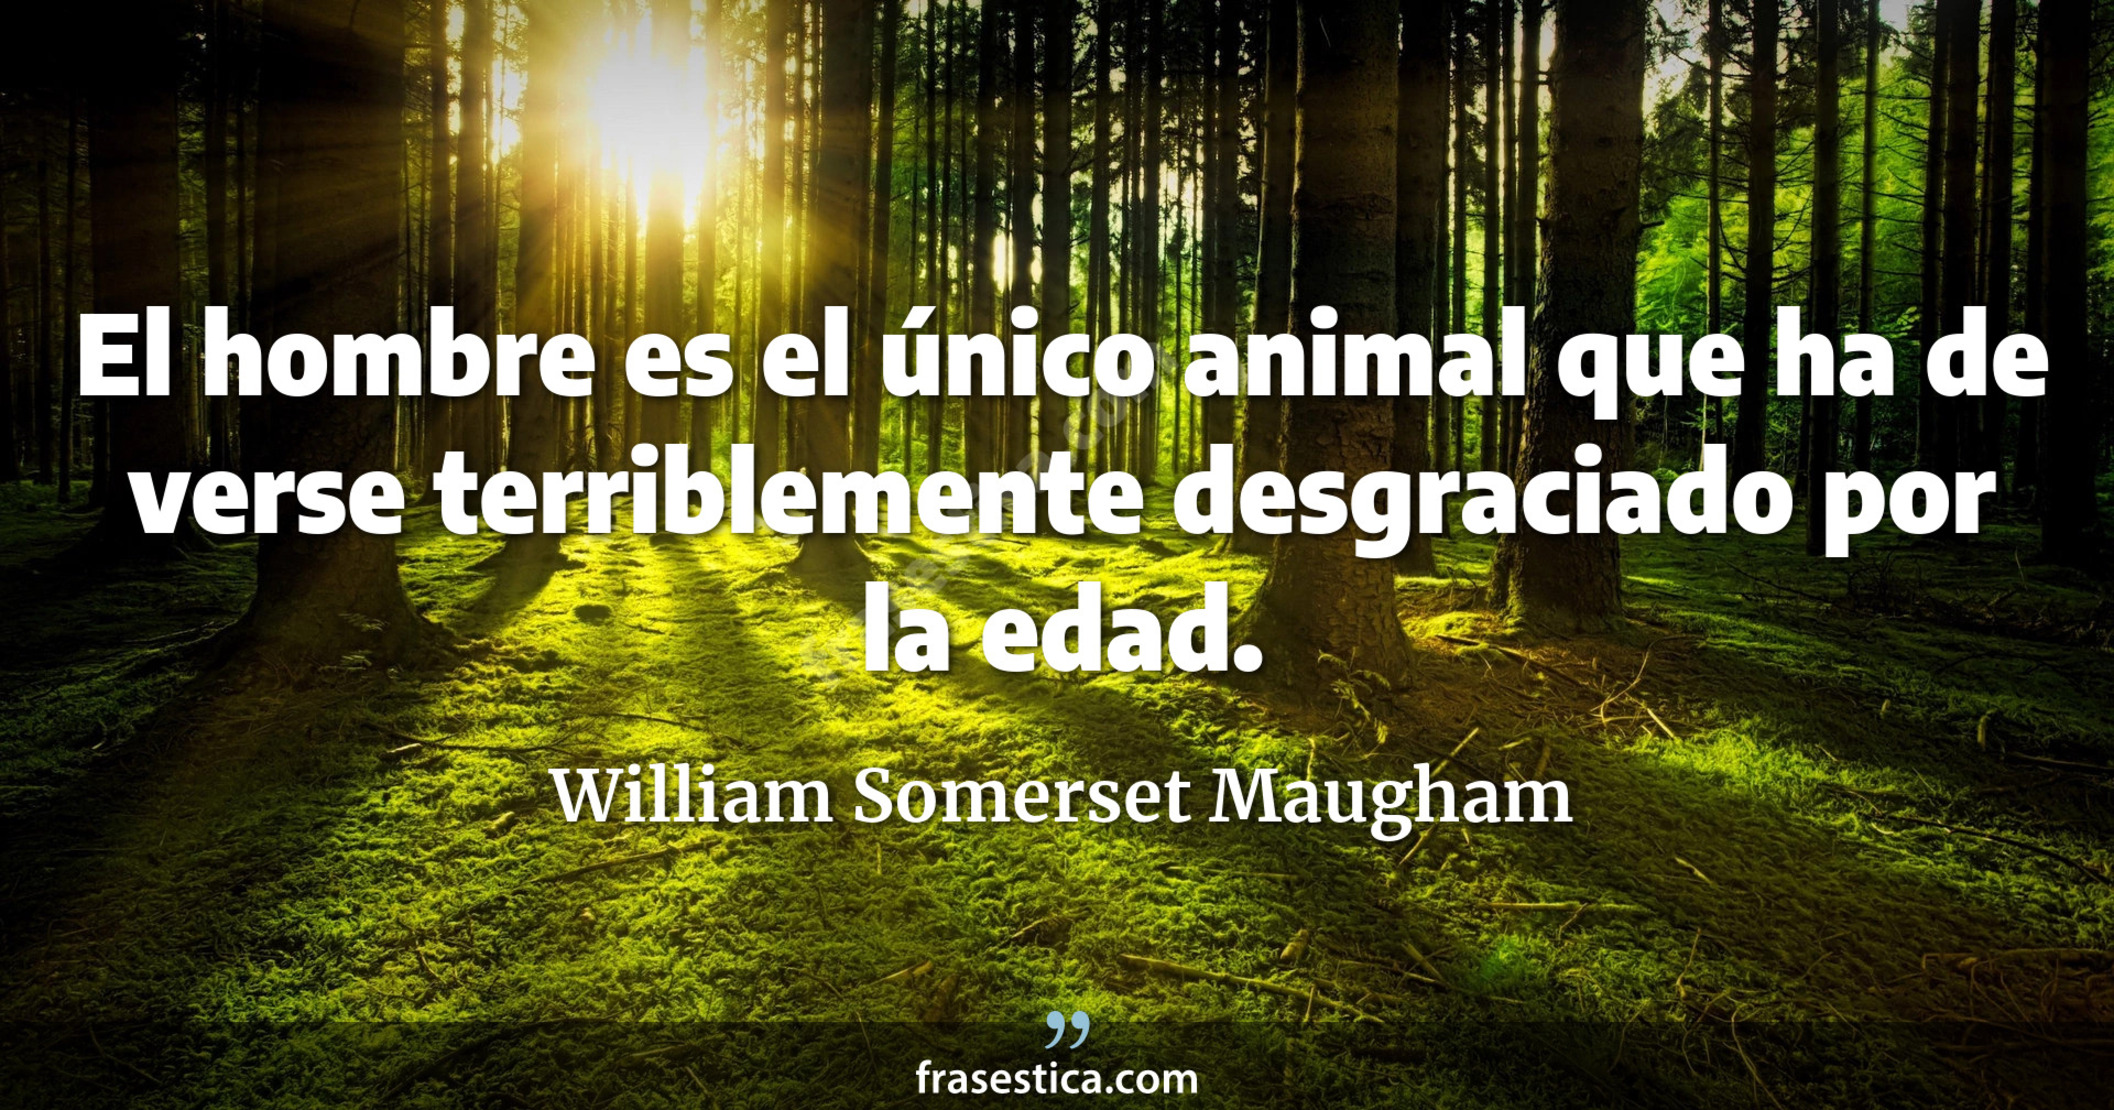 El hombre es el único animal que ha de verse terriblemente desgraciado por la edad. - William Somerset Maugham